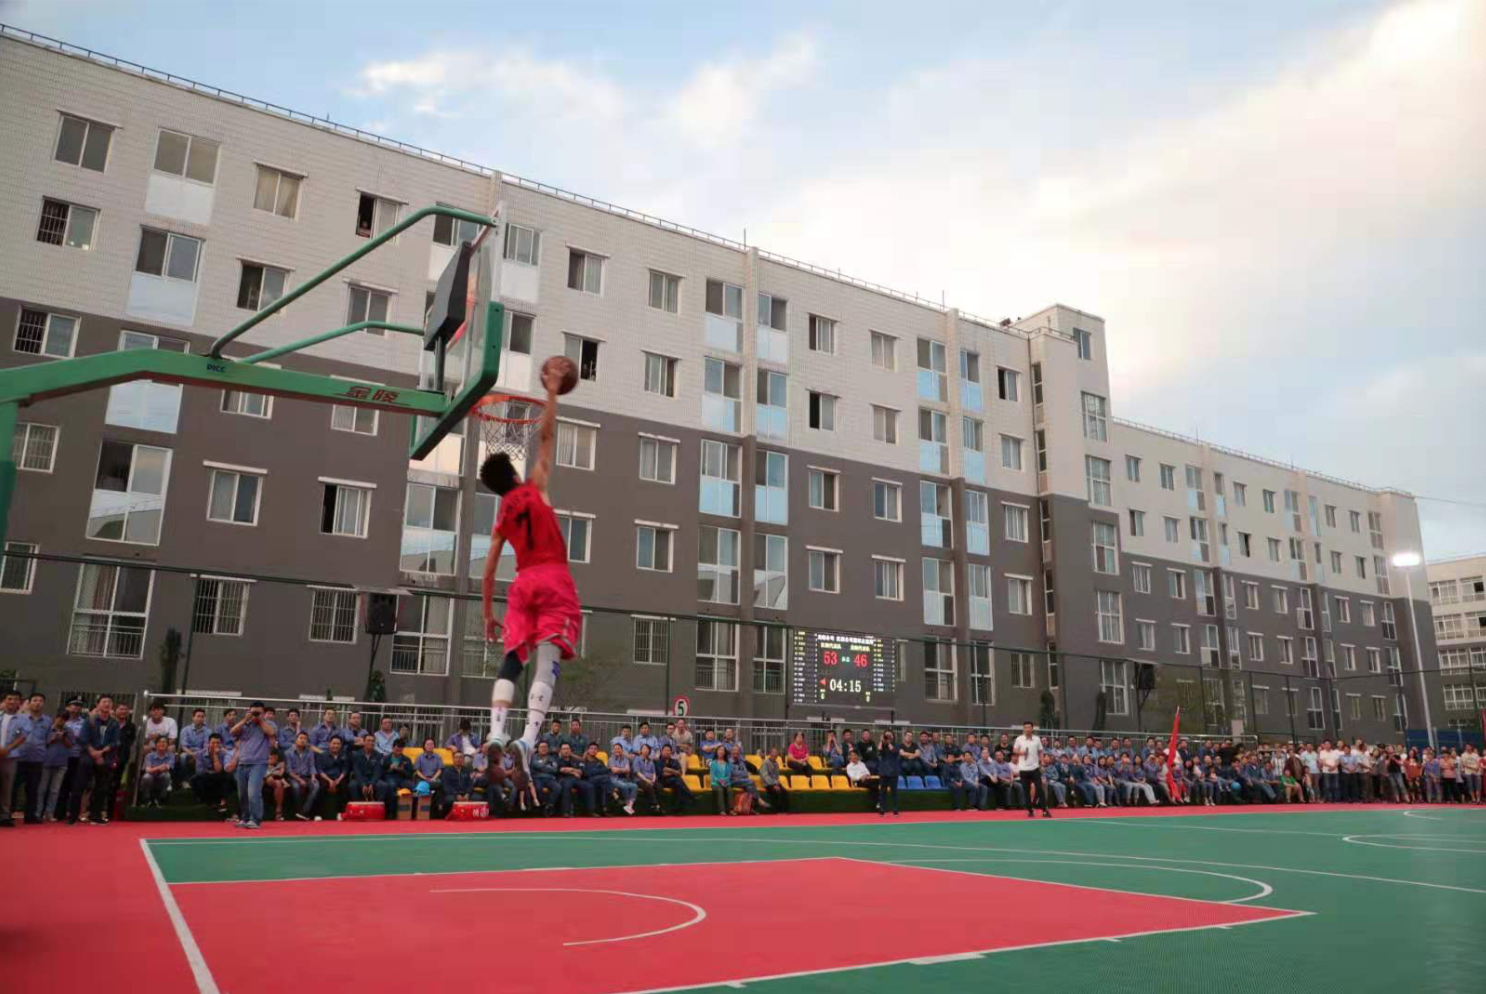 汉钢公司与龙钢公司举行篮球友谊赛